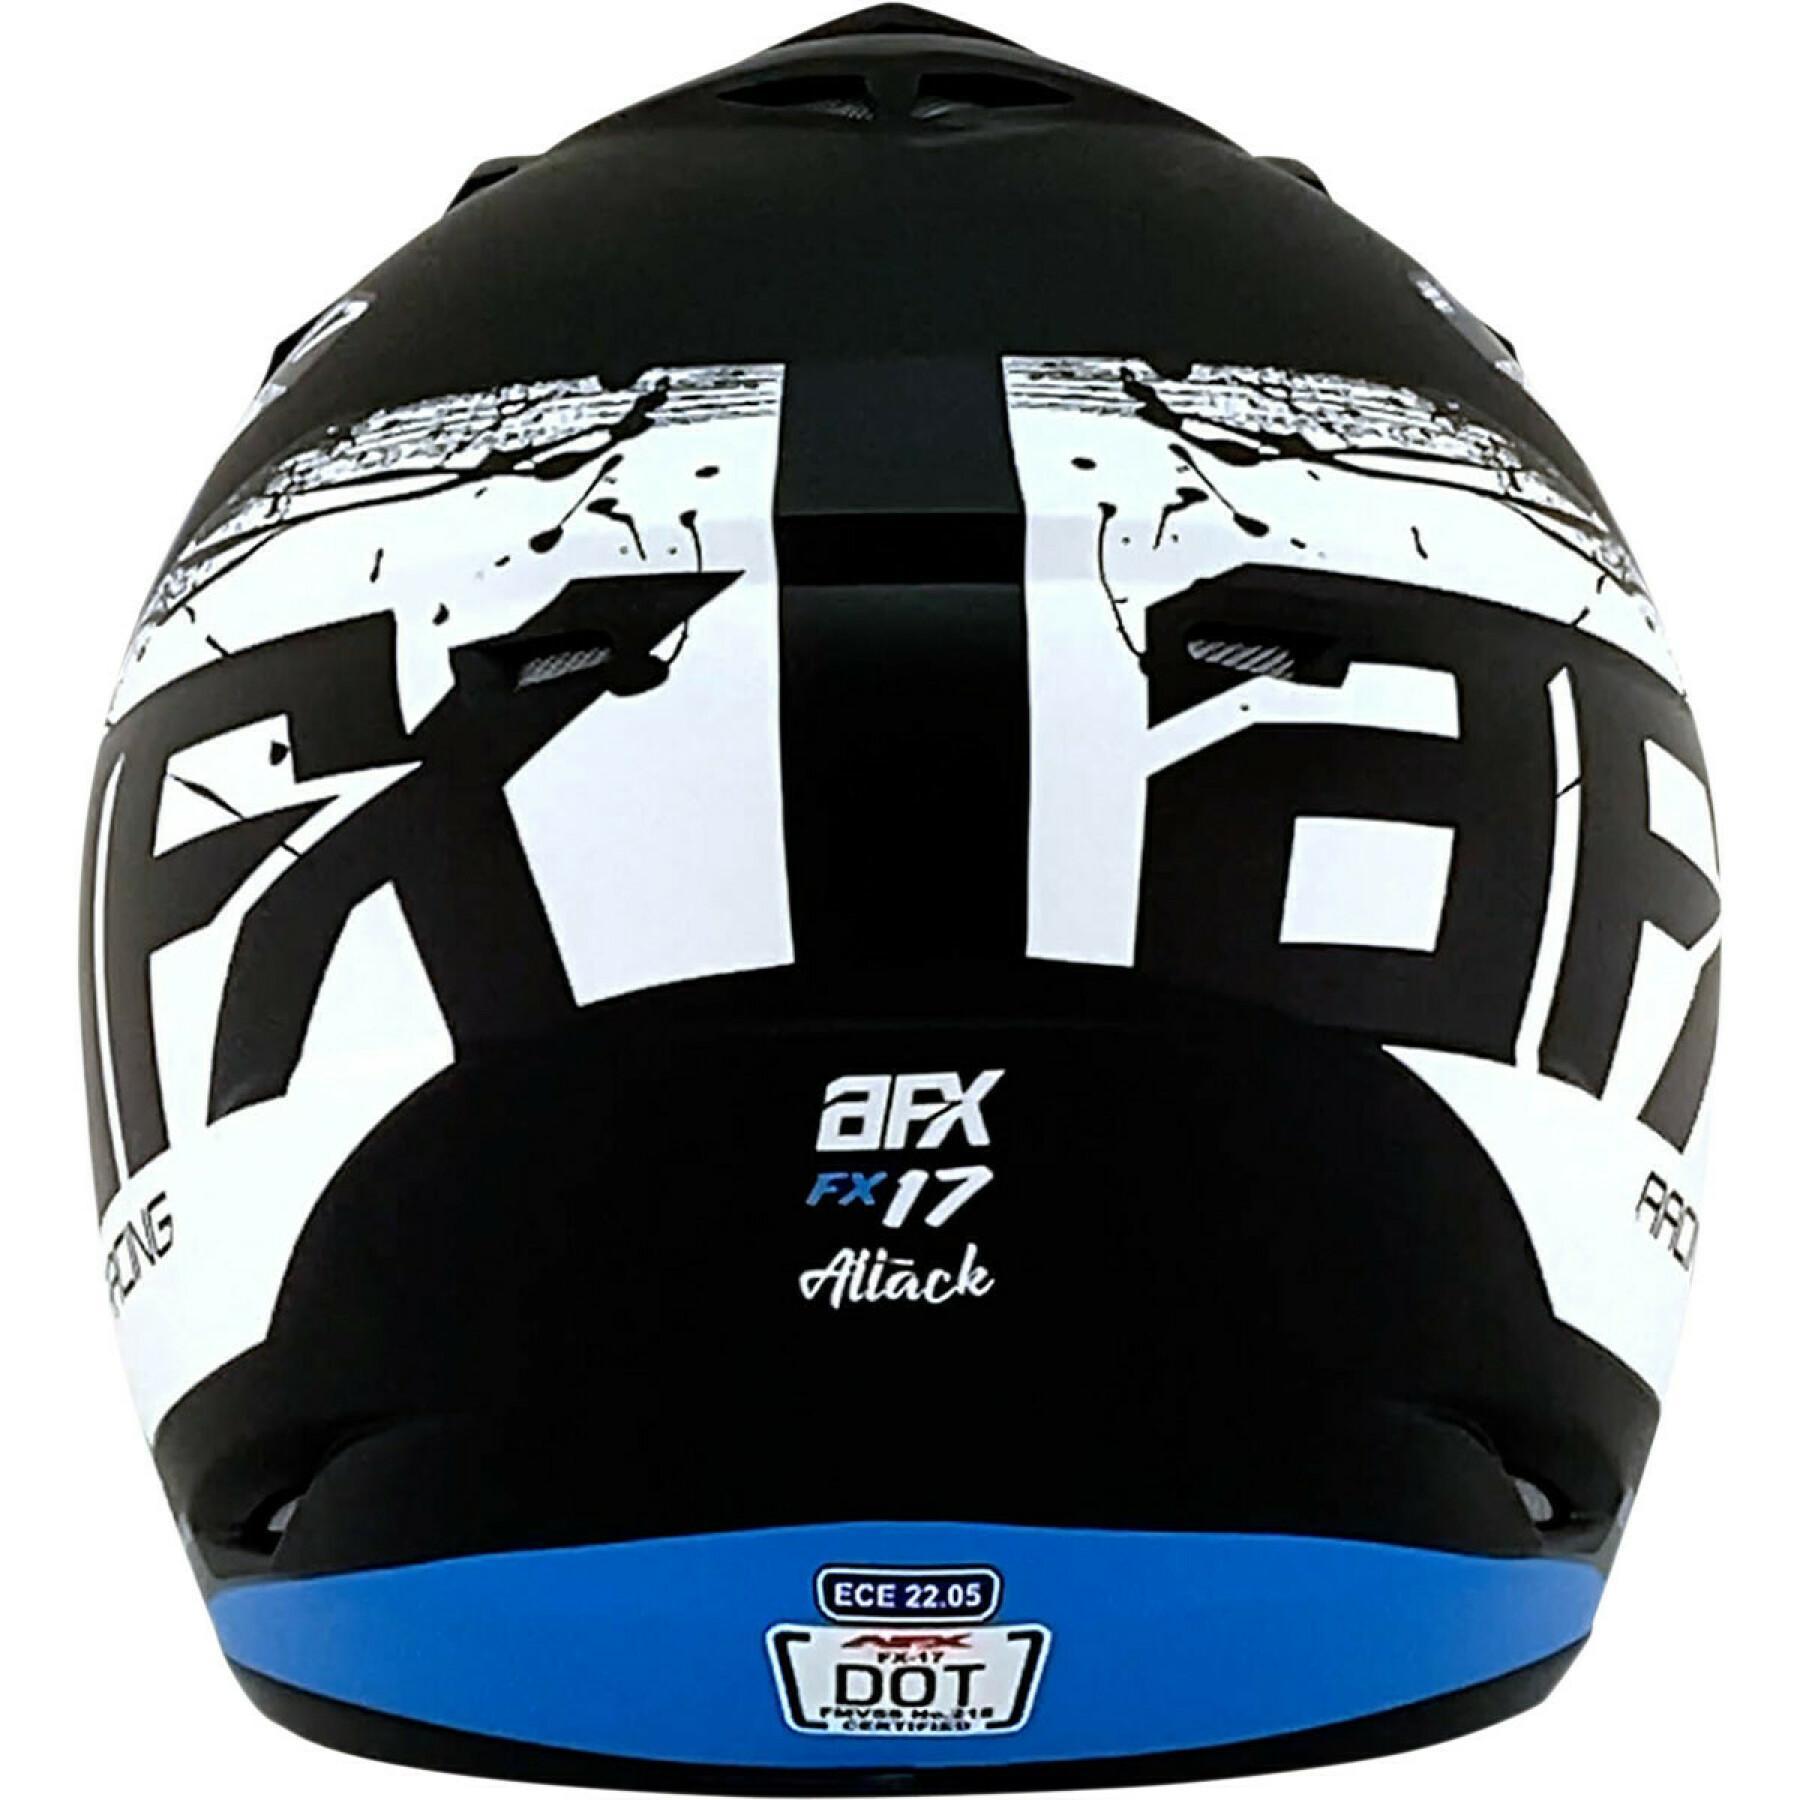 Casque moto cross AFX fx17 atk